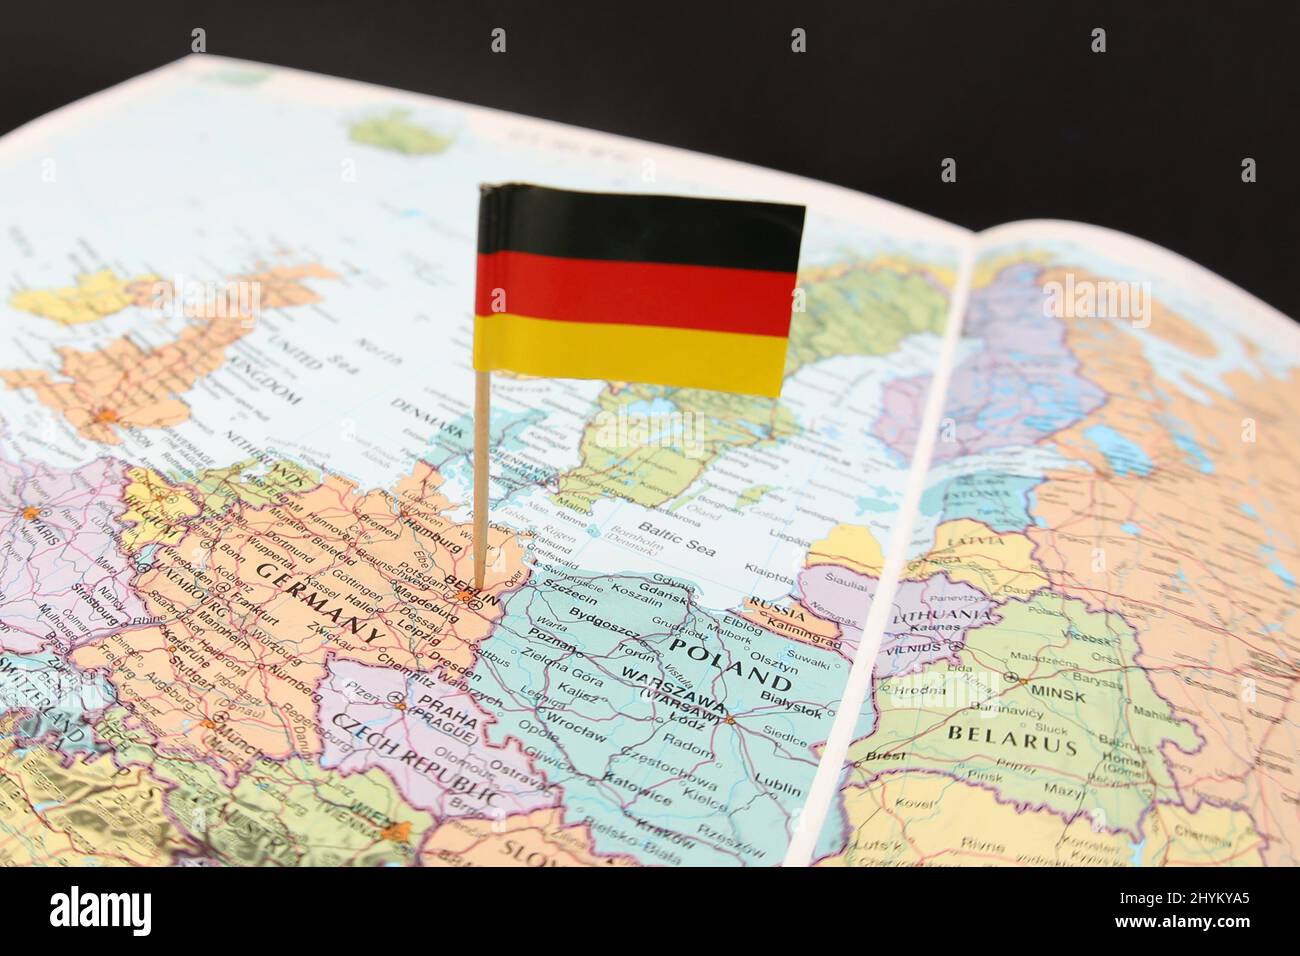 Le drapeau national allemand qui se trouve sur une image rapprochée d'une carte ou d'un atlas axé sur l'Europe occidentale. Le pays de l'Allemagne avec ses voisins. Banque D'Images